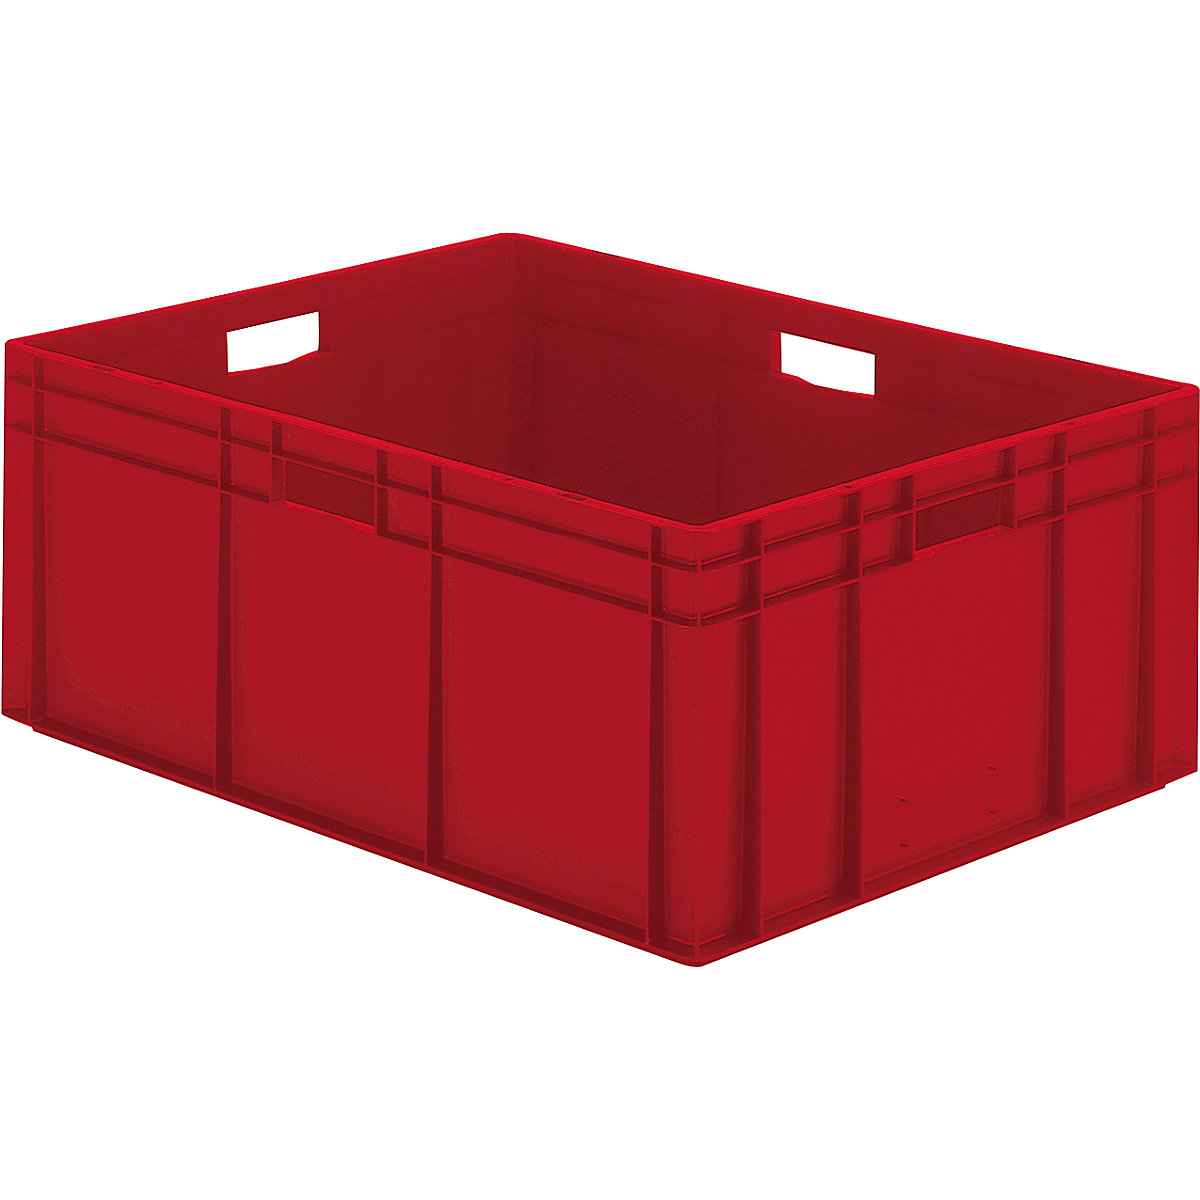 Euro-Format-Stapelbehälter, Wände und Boden geschlossen, LxBxH 800 x 600 x 320 mm, rot, VE 2 Stk